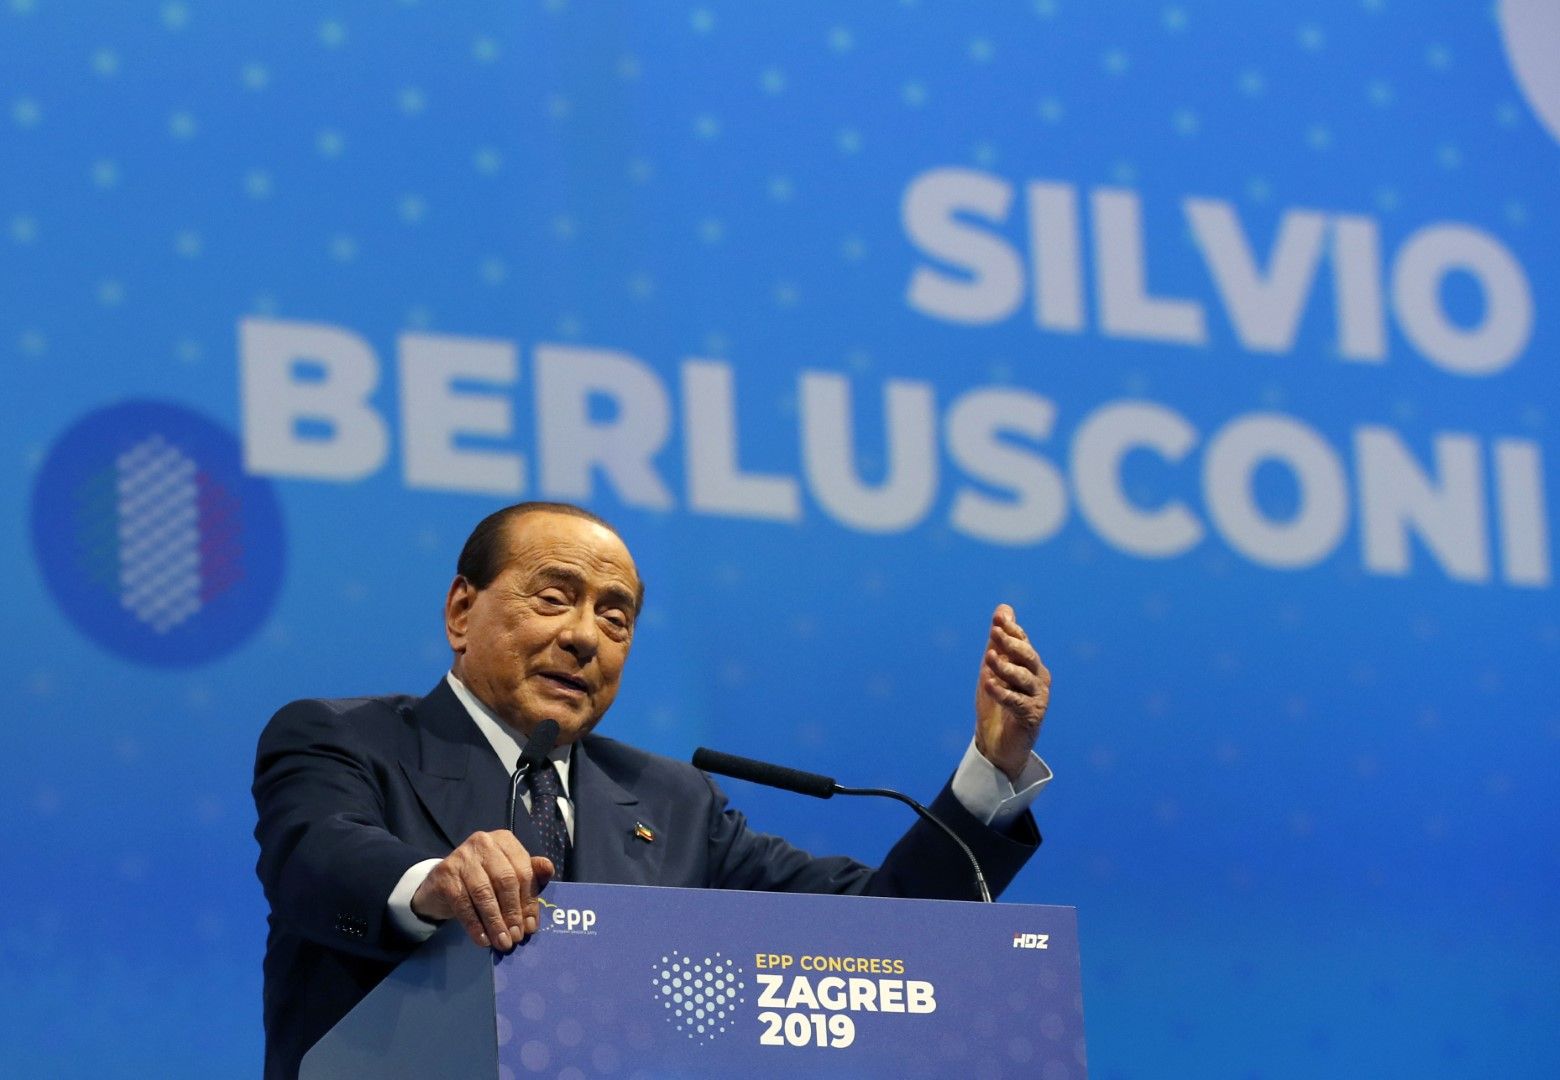 Силвио Берлускони, който беше министър-председател три пъти, беше съден за корупция по афера, станала известна като "Рубигейт". Той беше съден и за подкупване на свидетели и музикант във връзка с неговите "бунга-бунга партита" с млади жени, но оправдан